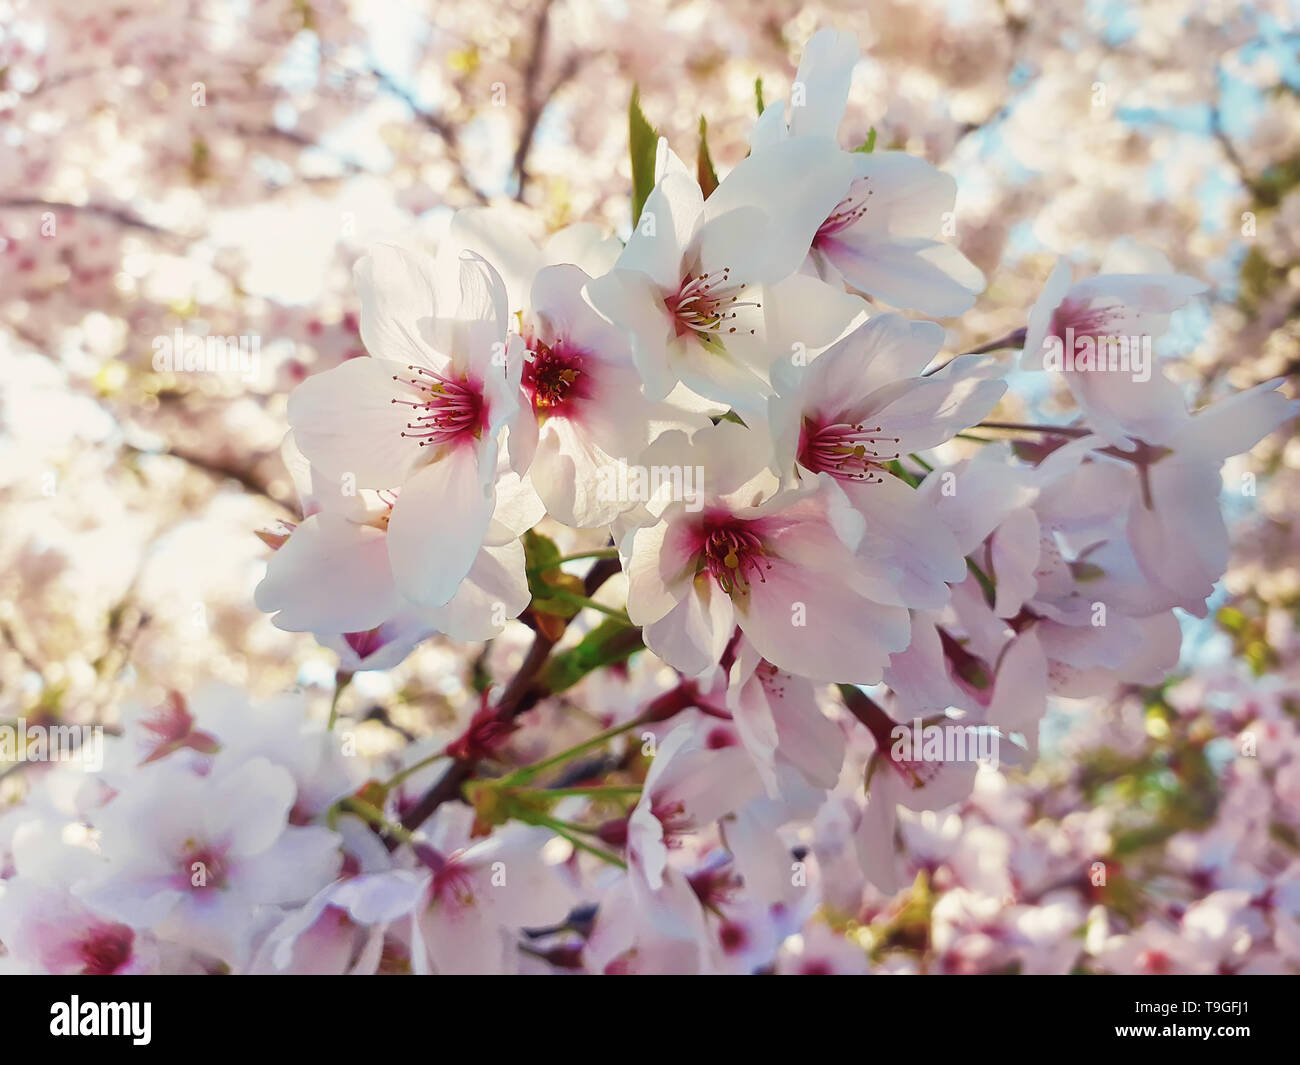 Nahaufnahme eines wilden weißen Kirschbaum blüht. Frühling Blumen Hintergrund, cluster Blüten auf die Niederlassung in den Park. Schöne Natur saisonale Szene. Stockfoto